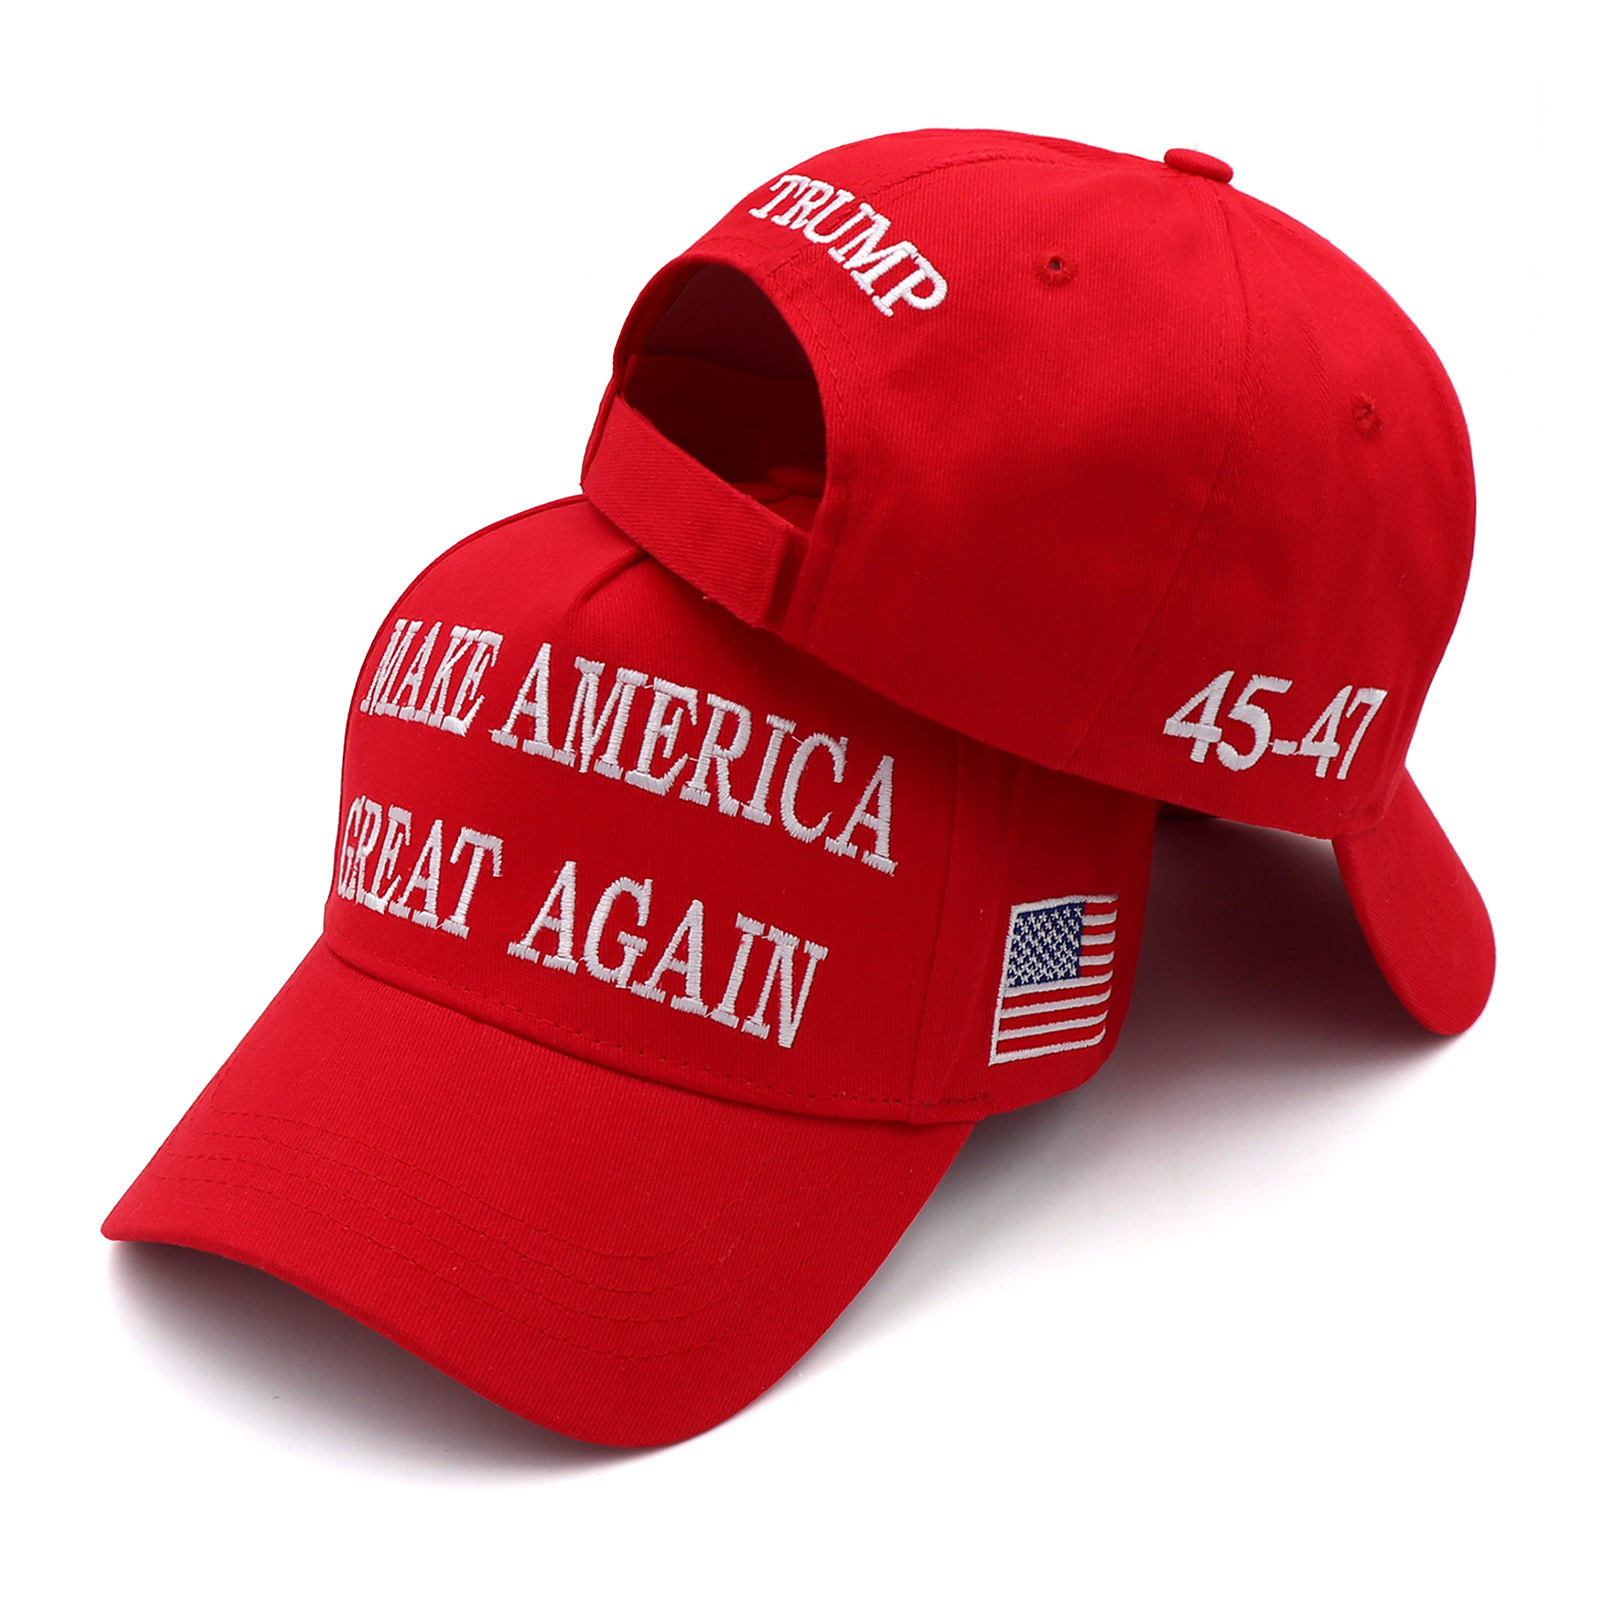 Trump Etkinlik Parti Şapkaları Pamuk Nakış Beyzbol Şapkası Trump 45-47th Amerika'yı Yeniden Büyük Yap Spor Şapkası